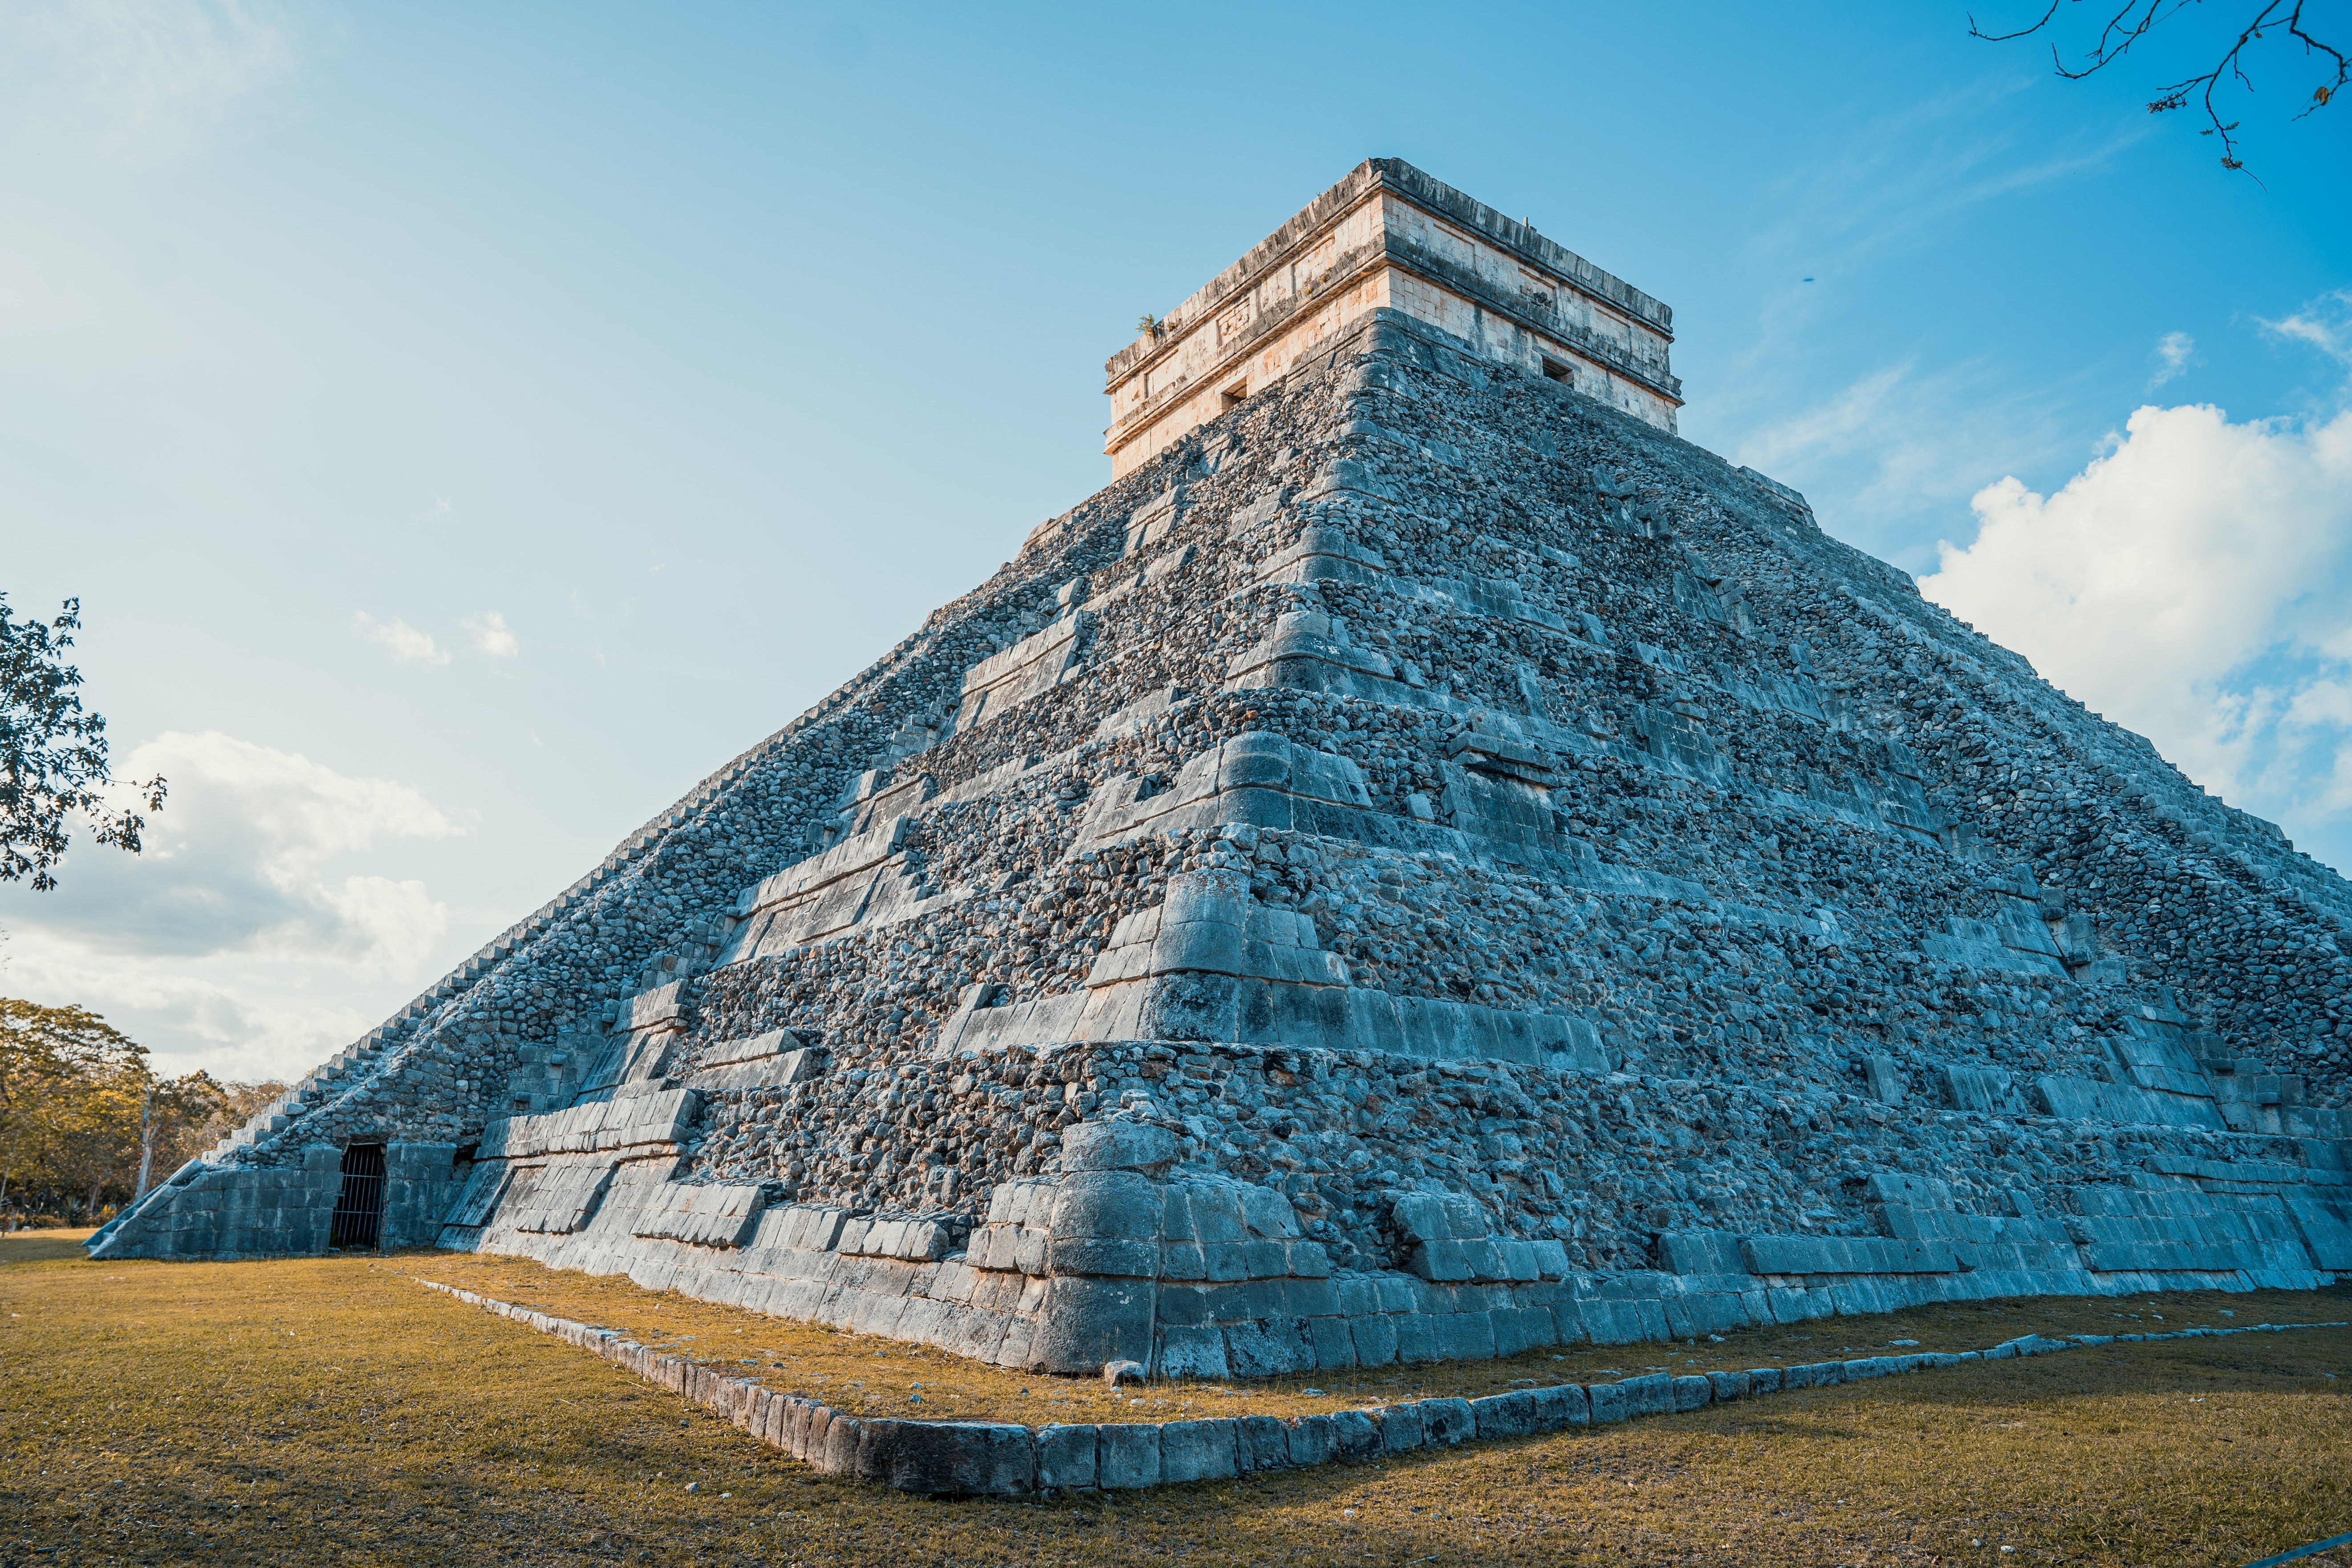 The Mayan ruins at Chichén-Itzá, Yucatan, Mexico